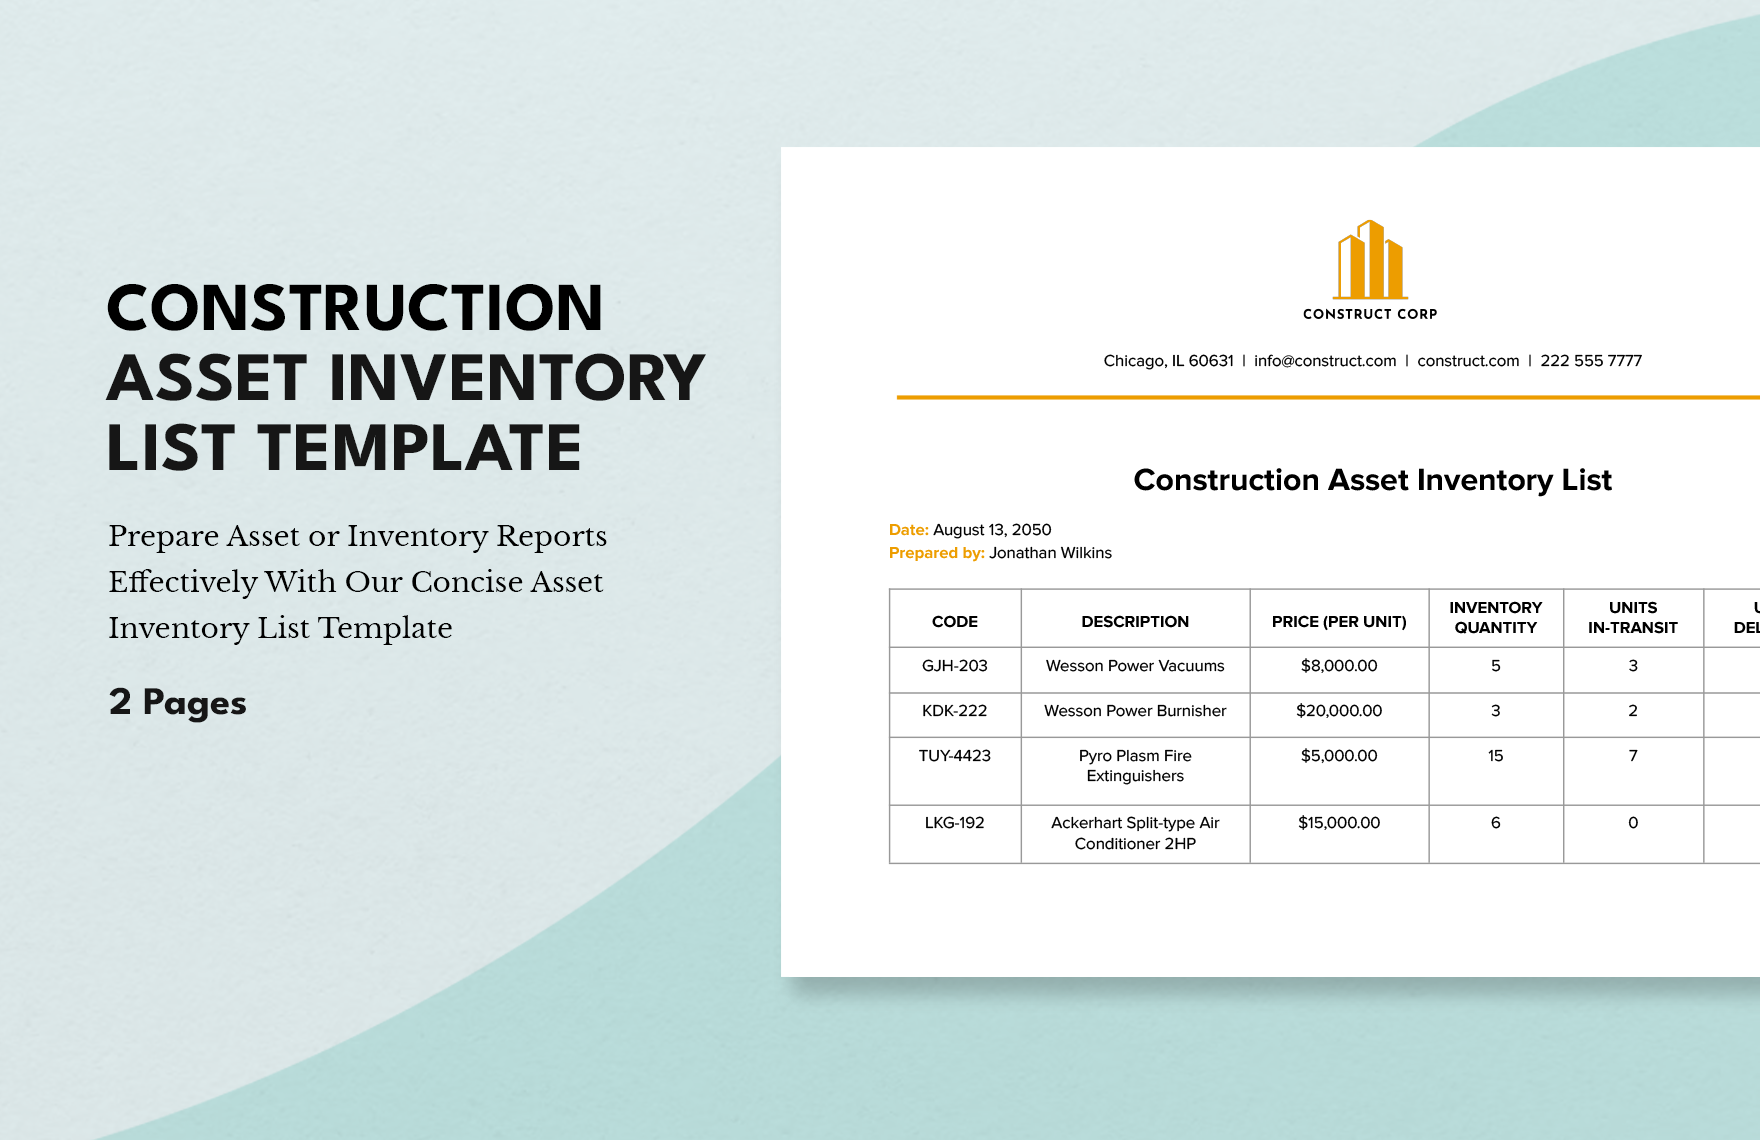 Construction Asset Inventory List Template